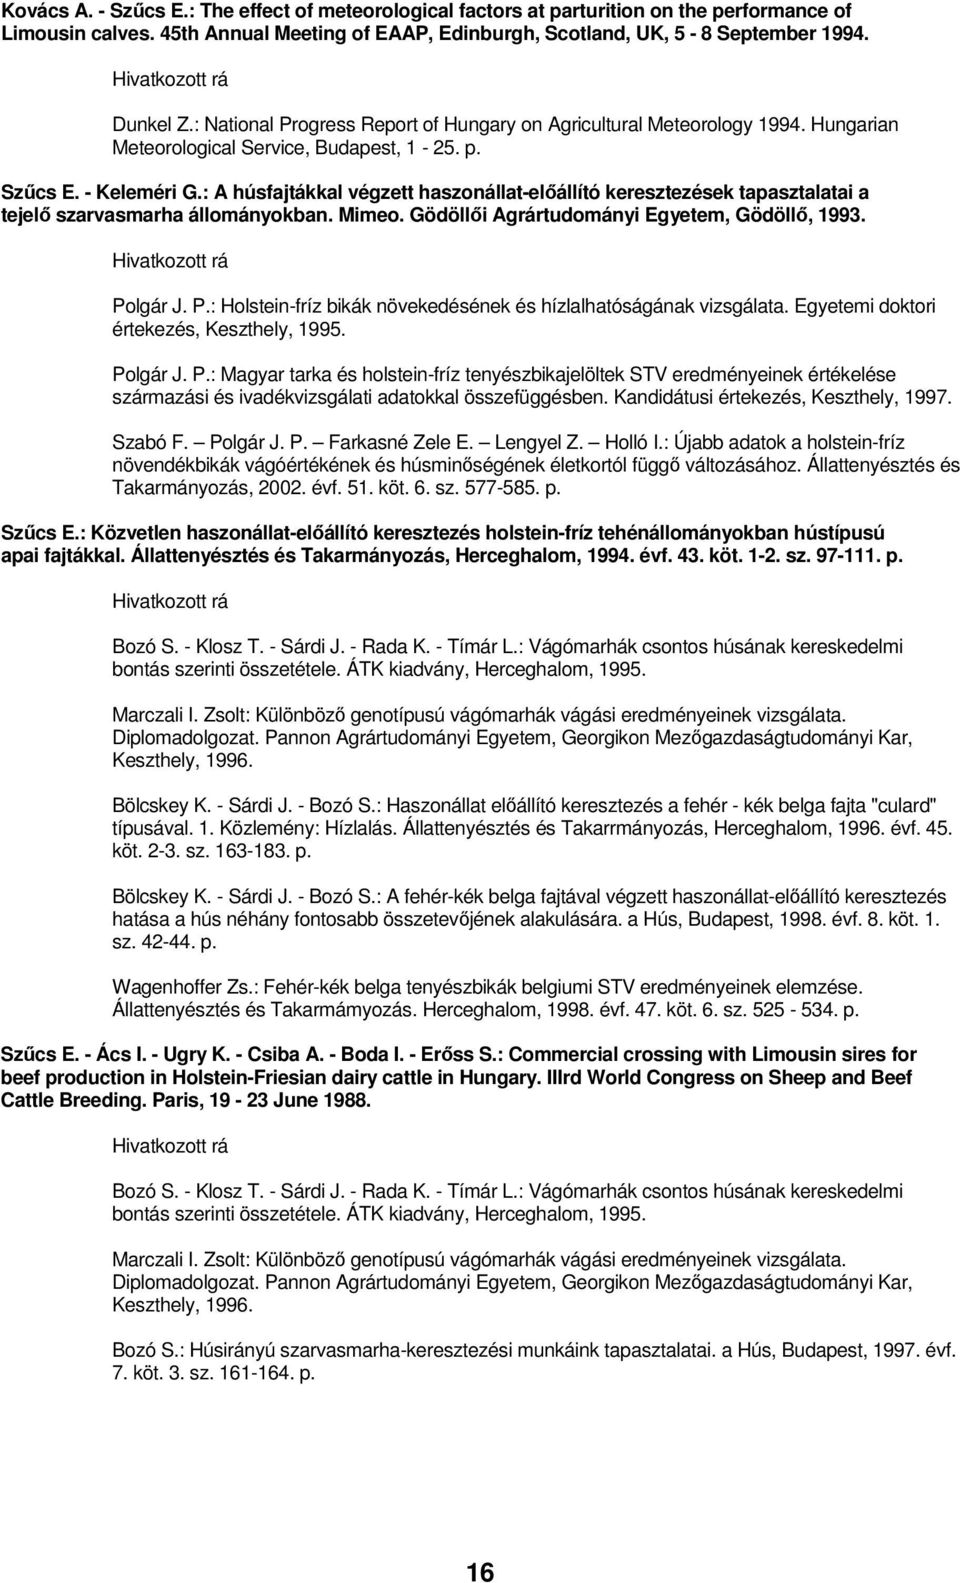 : A húsfajtákkal végzett haszonállat-elıállító keresztezések tapasztalatai a tejelı szarvasmarha állományokban. Mimeo. Gödöllıi Agrártudományi Egyetem, Gödöllı, 1993. Po